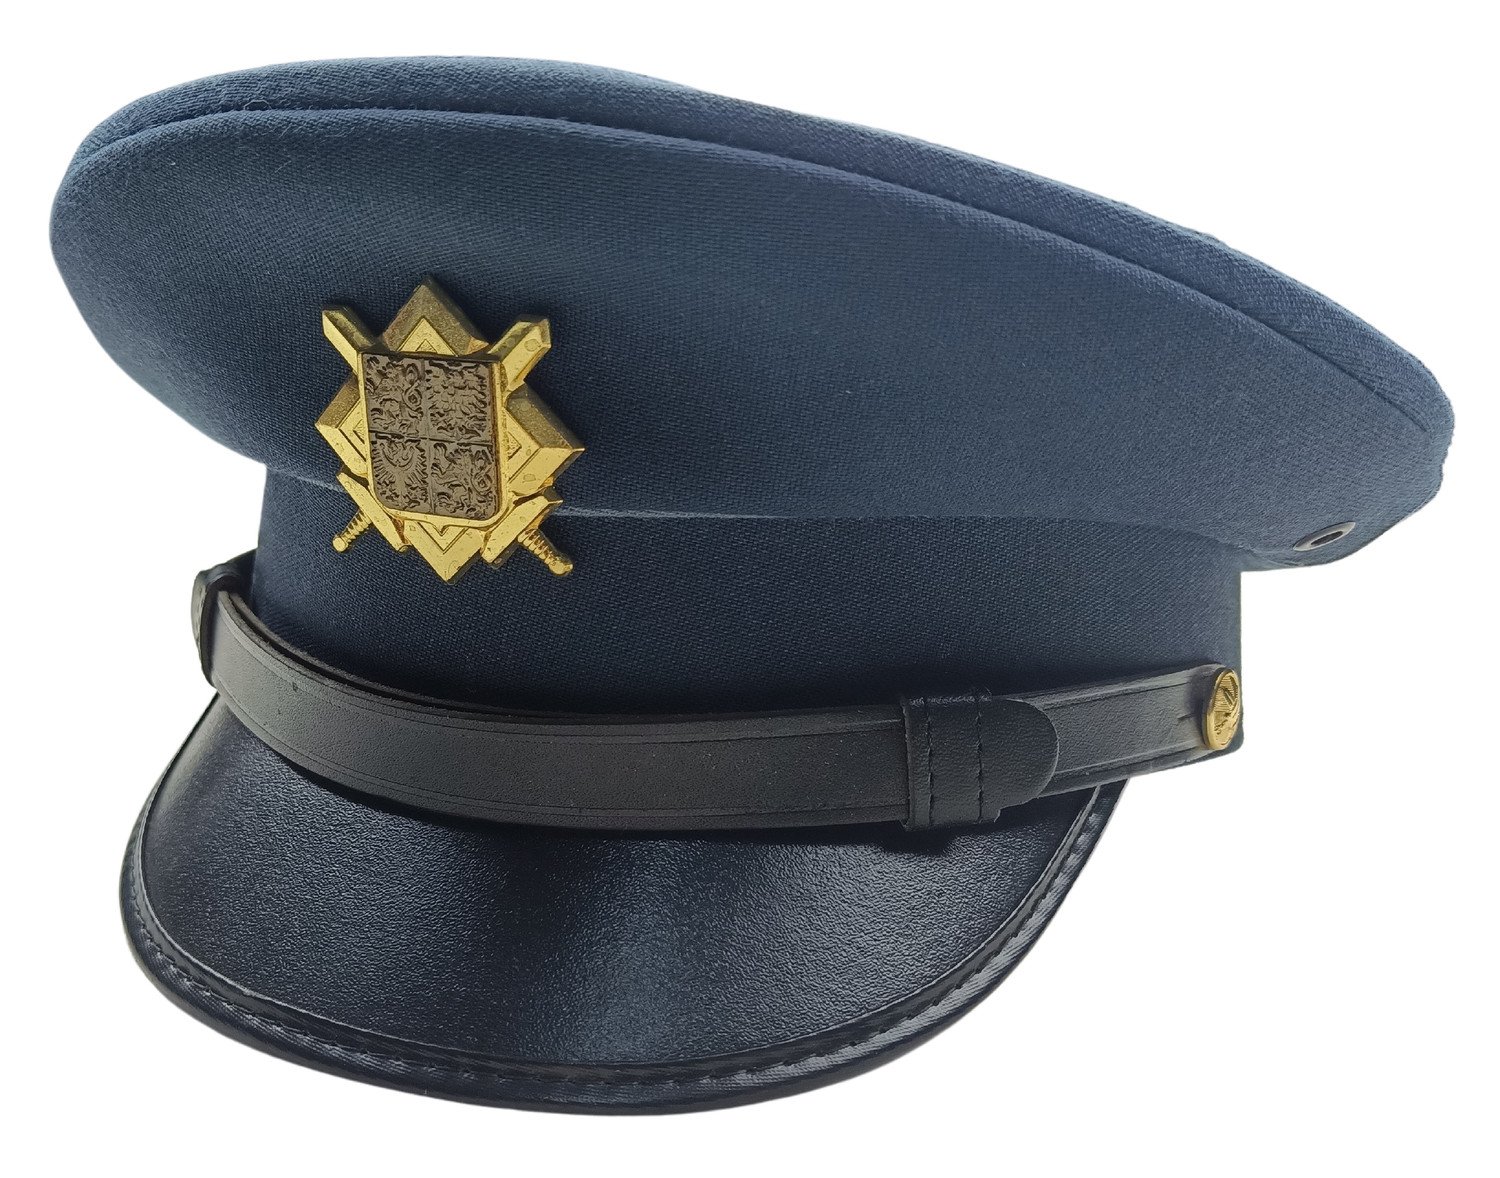 Brigadýrka služební s odznakem AČR modrá vz.97 vzdušné síly originál Velikost: 53